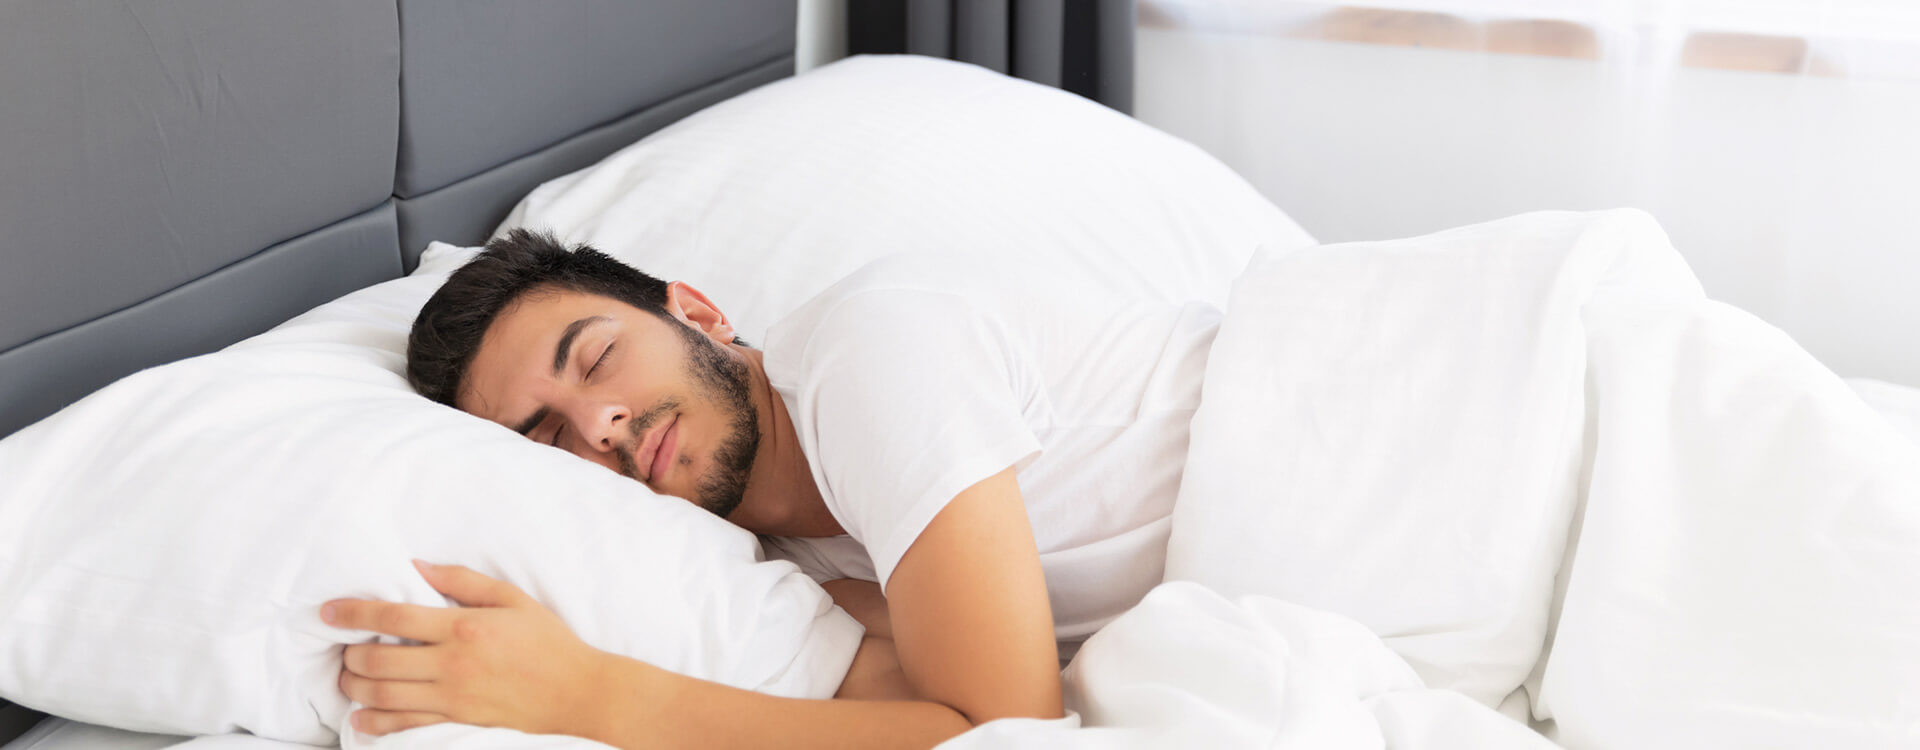 Understanding Sleep The Restorative Power of Slumber